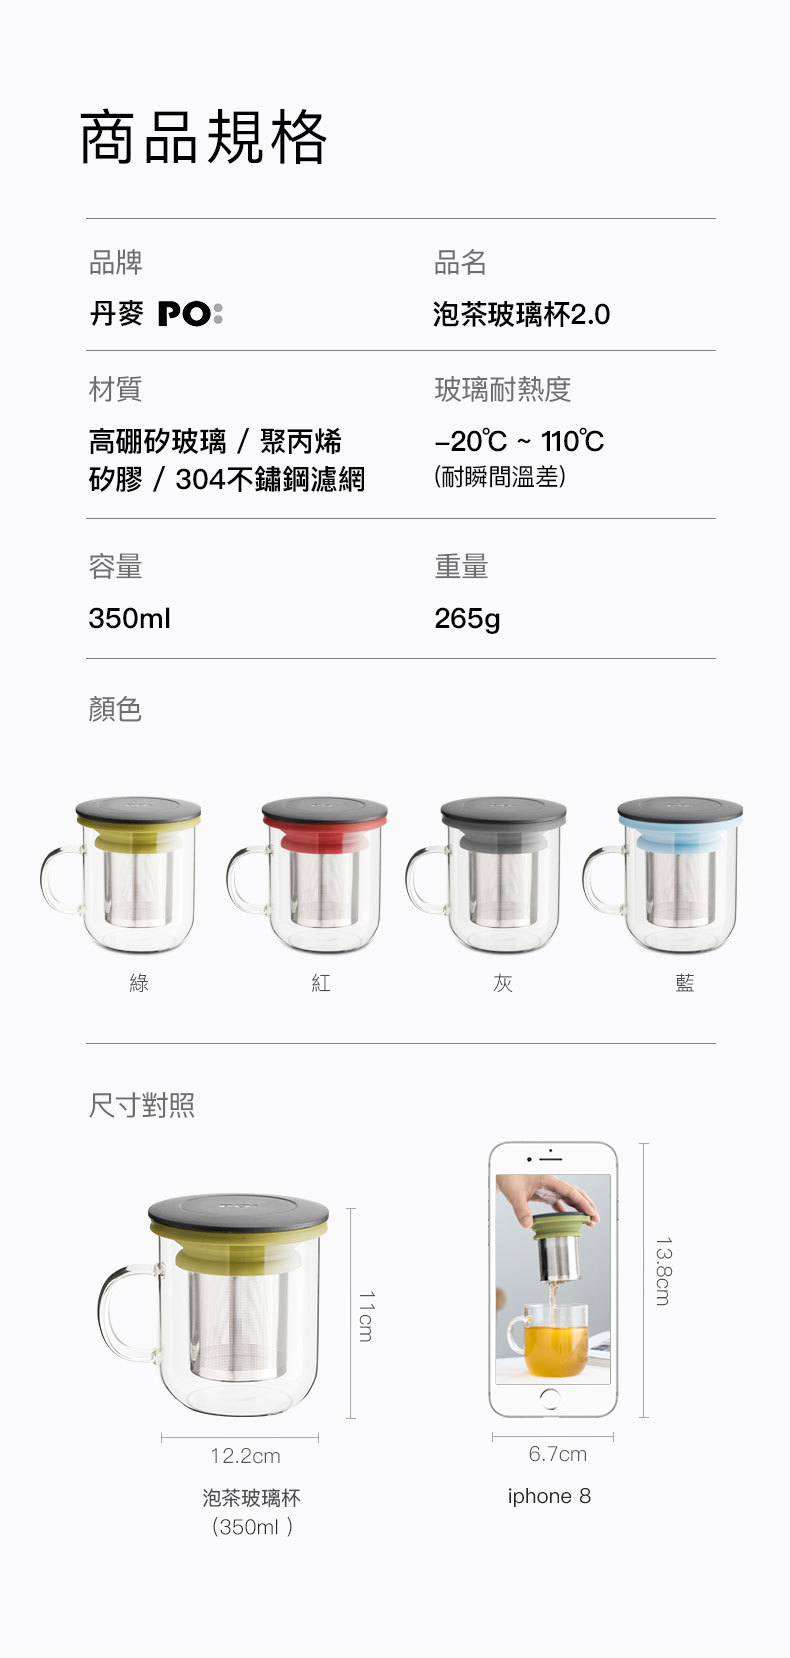 丹麥設計 PO:Selected 玻璃泡茶杯 350ml (紅+黑)